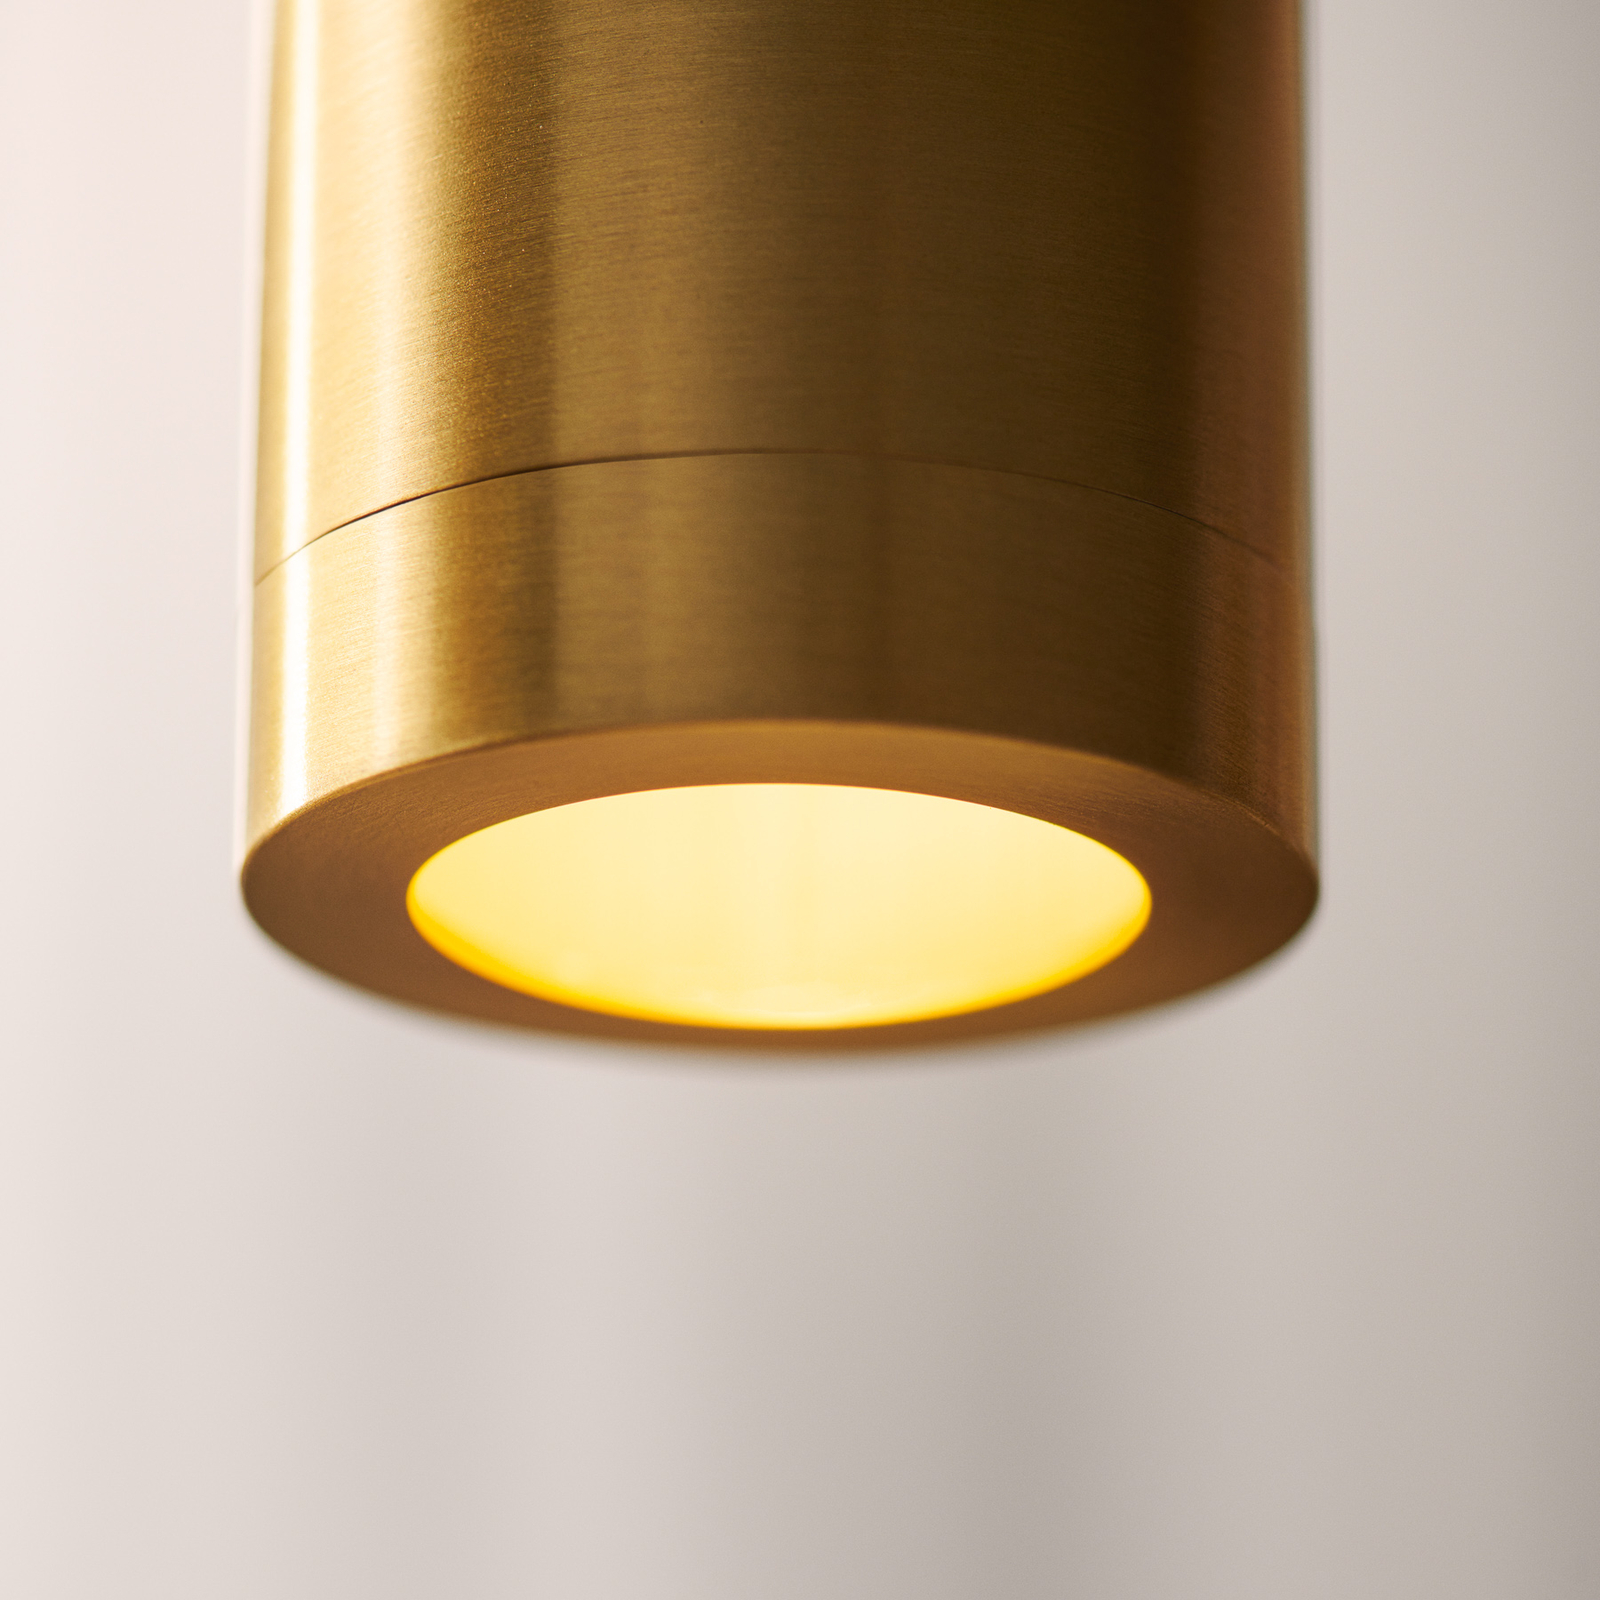 Lampa wisząca Liberty Spot, kolor złoty, wysokość 25 cm